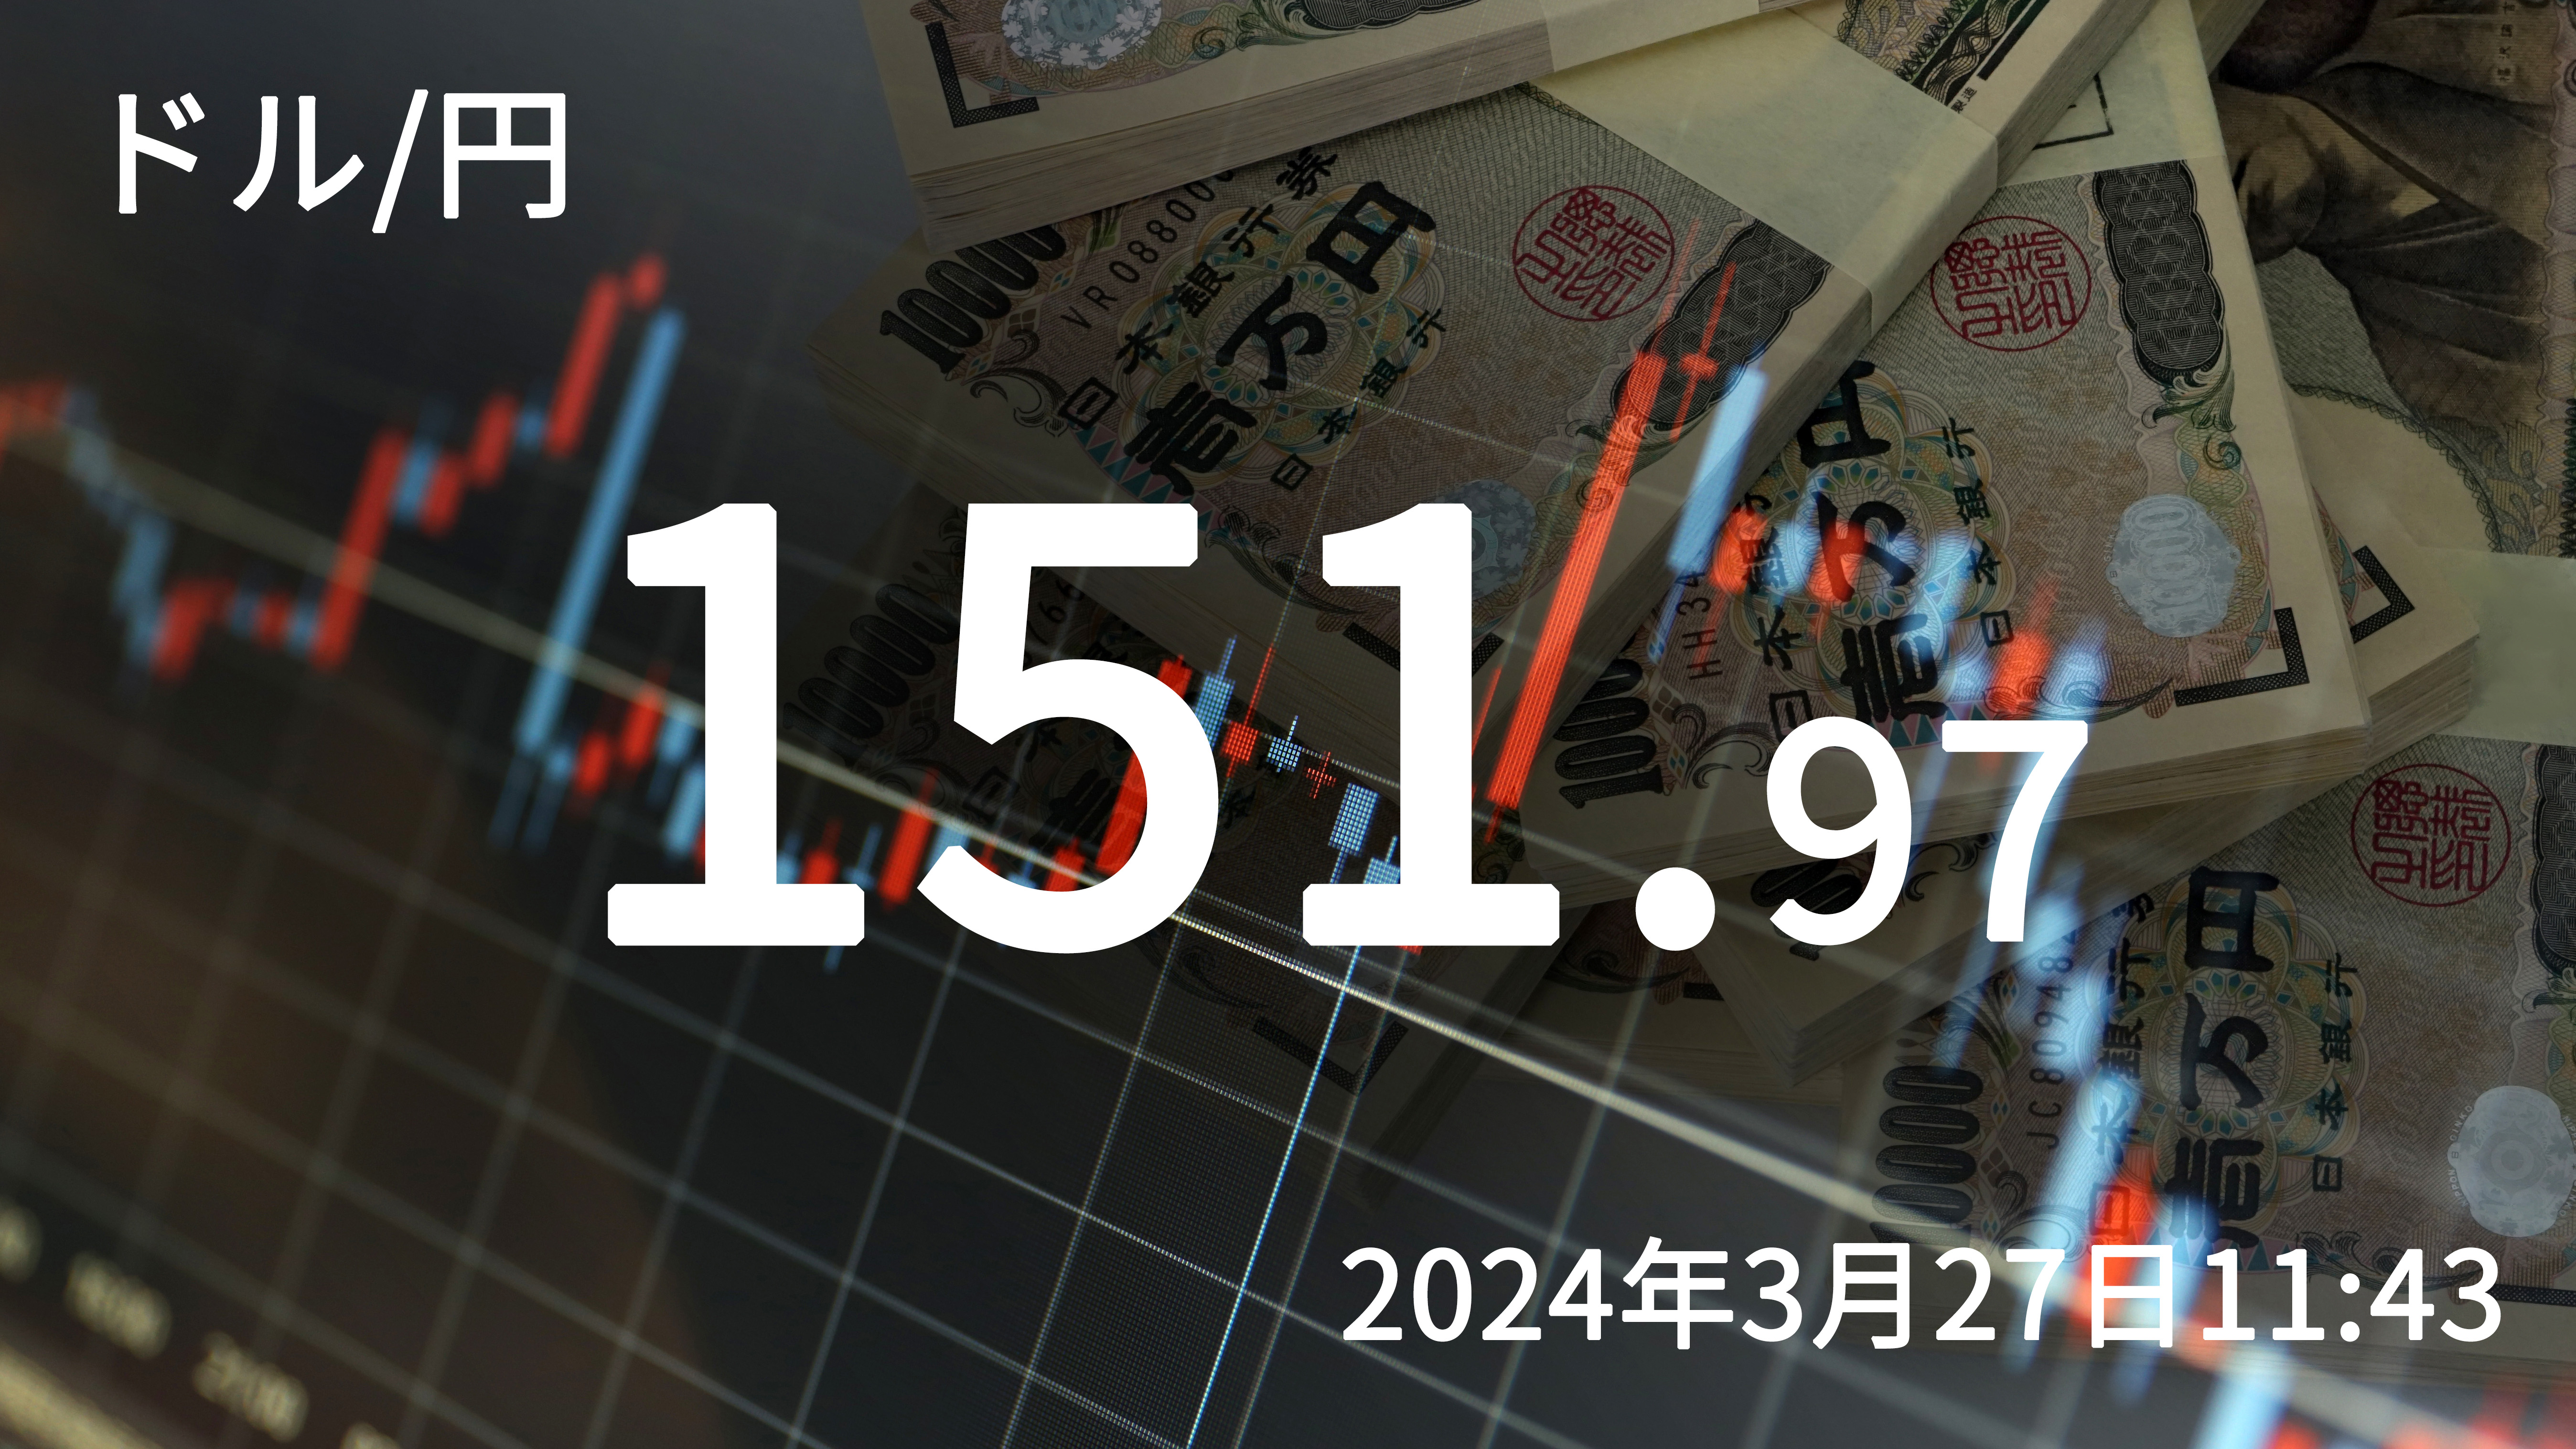 2024年3月27日 - ドル円レートを伝えるボード。151.97円。 27日午前の東京市場で円安ドル高地合いとなり、一時151円97銭をつけた。2022年の高値を上抜け、1990年以来の水準。日銀審議委員の発言で今後も緩和的な政策が継続するとの思惑から、円売りが主要通貨を押し上げる展開となった。